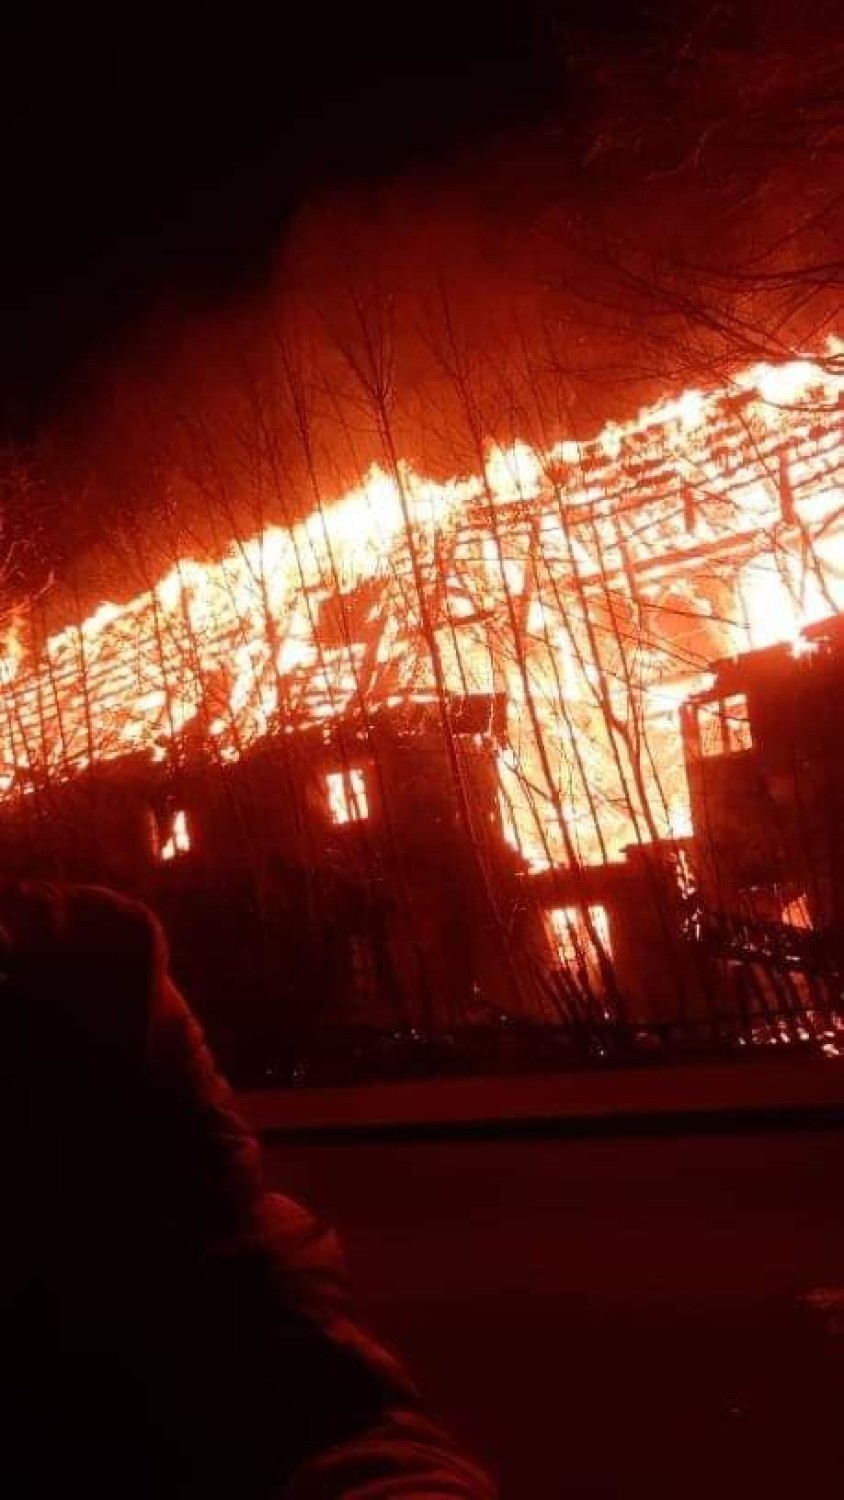 Ogromny pożar w Świeradowie - Zdroju. Wiatr utrudniał akcję straży